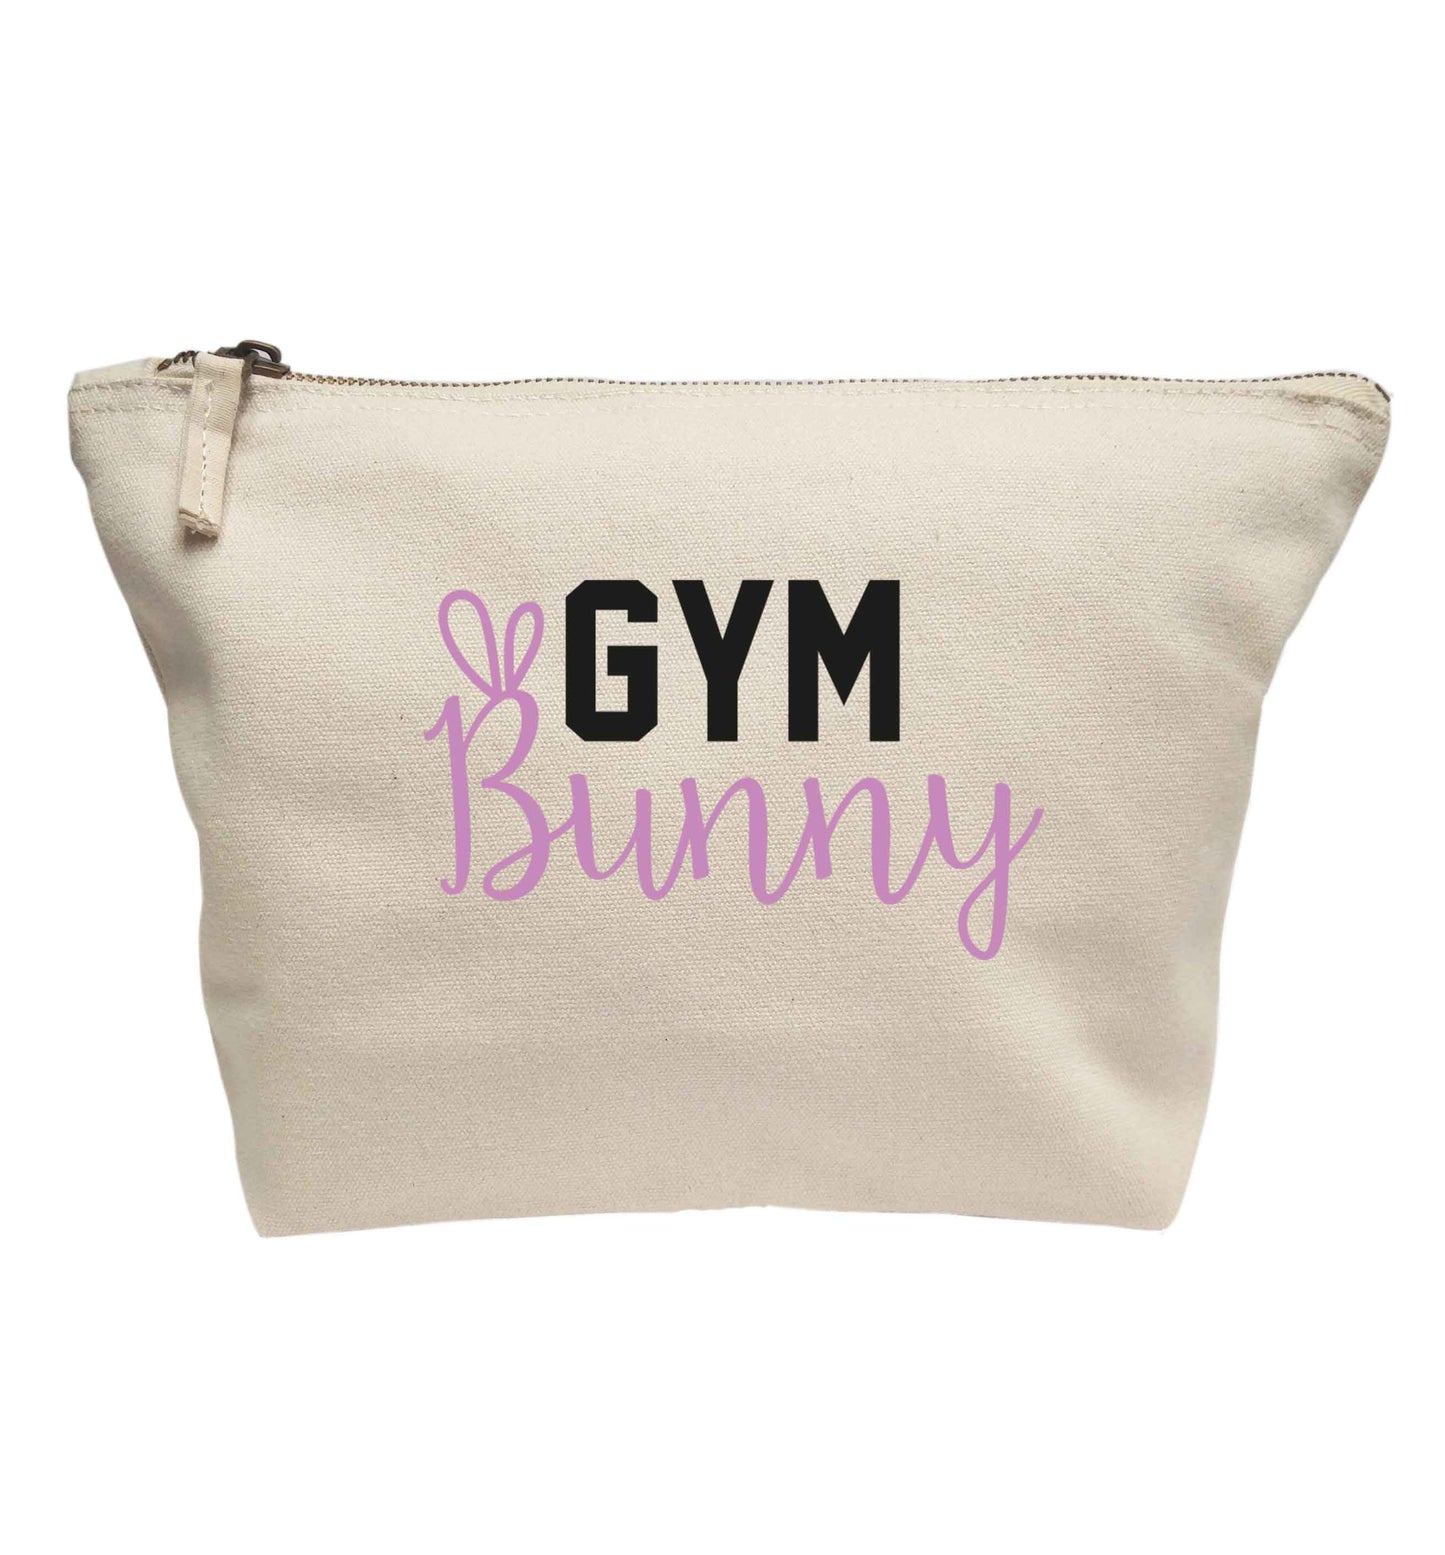 gym bunny | Makeup / wash bag